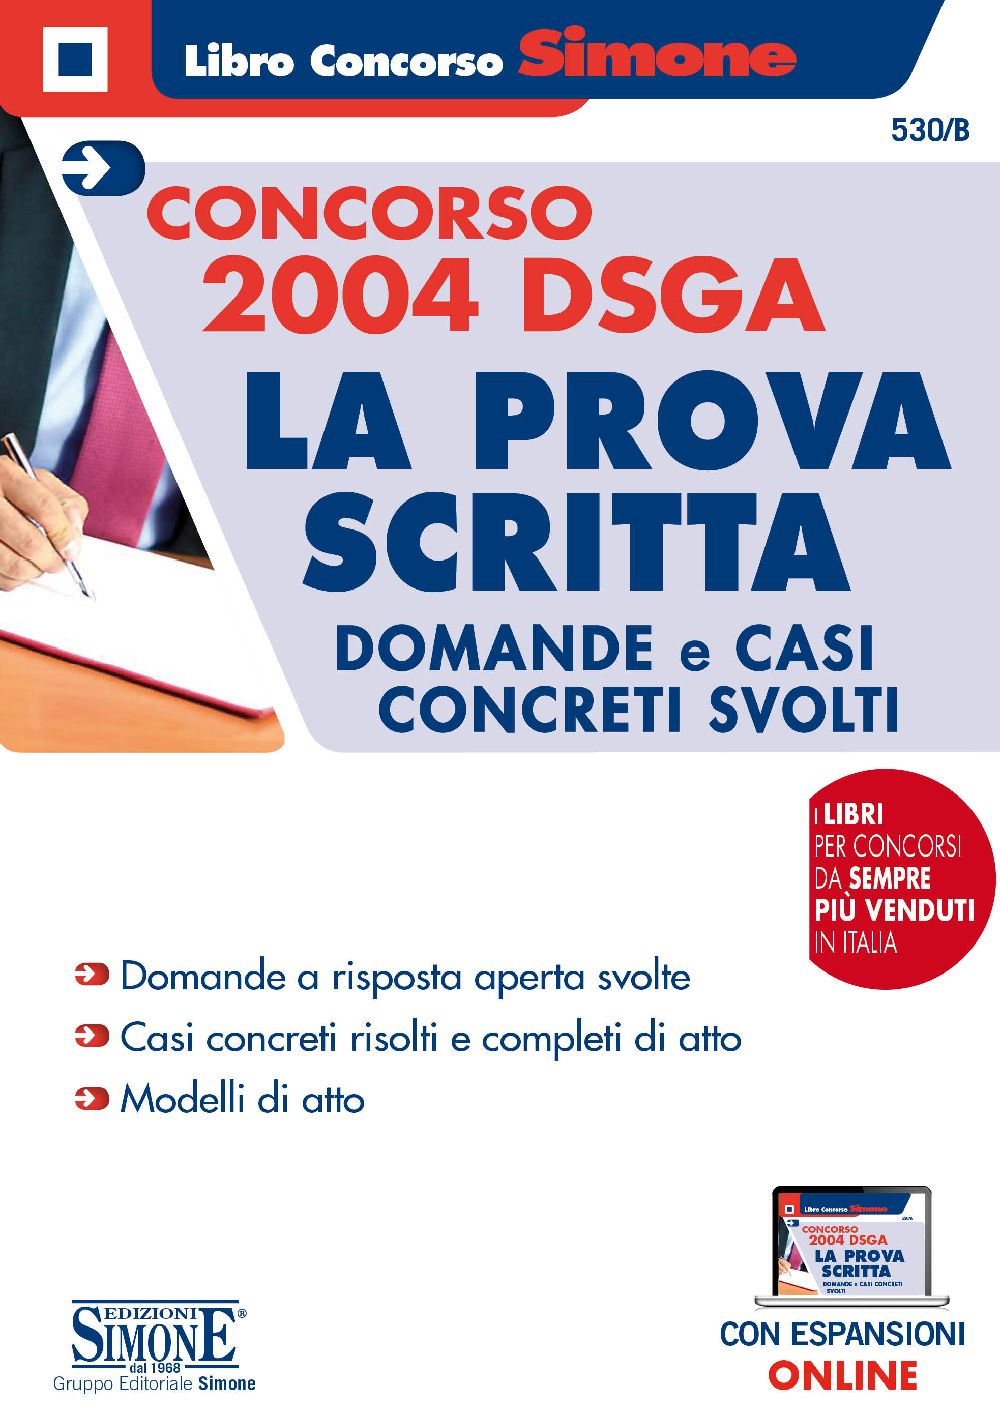 Concorso 2004 DSGA - La Prova Scritta - Domande e casi concreti svolti - 530/B